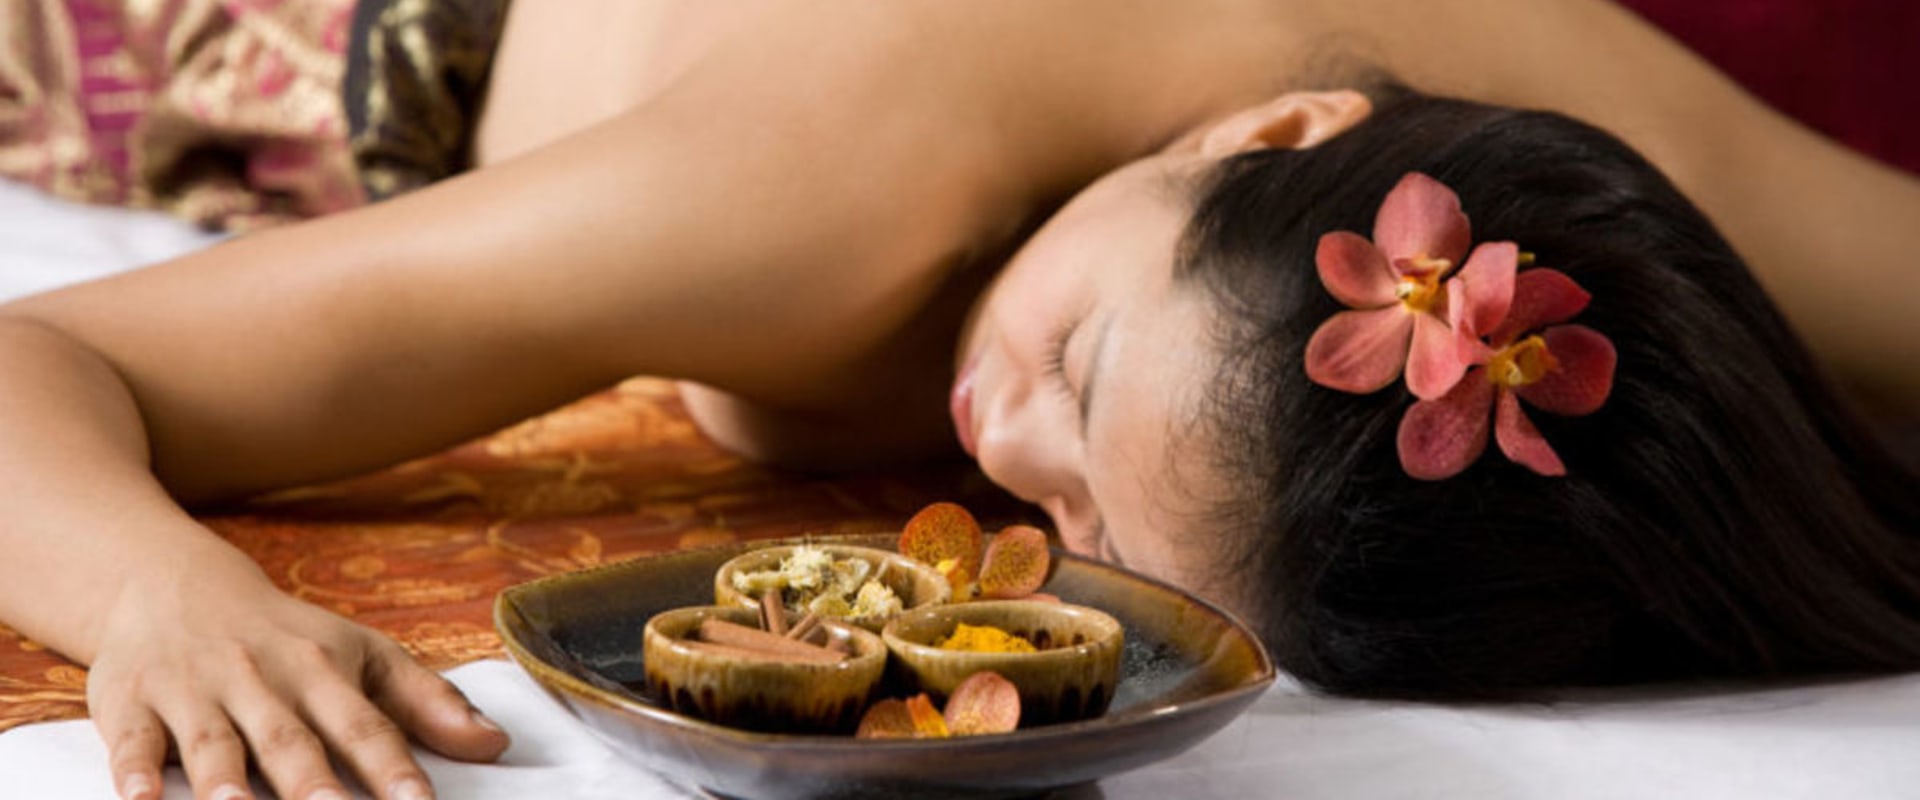 Kann thailändische massage schädlich sein?